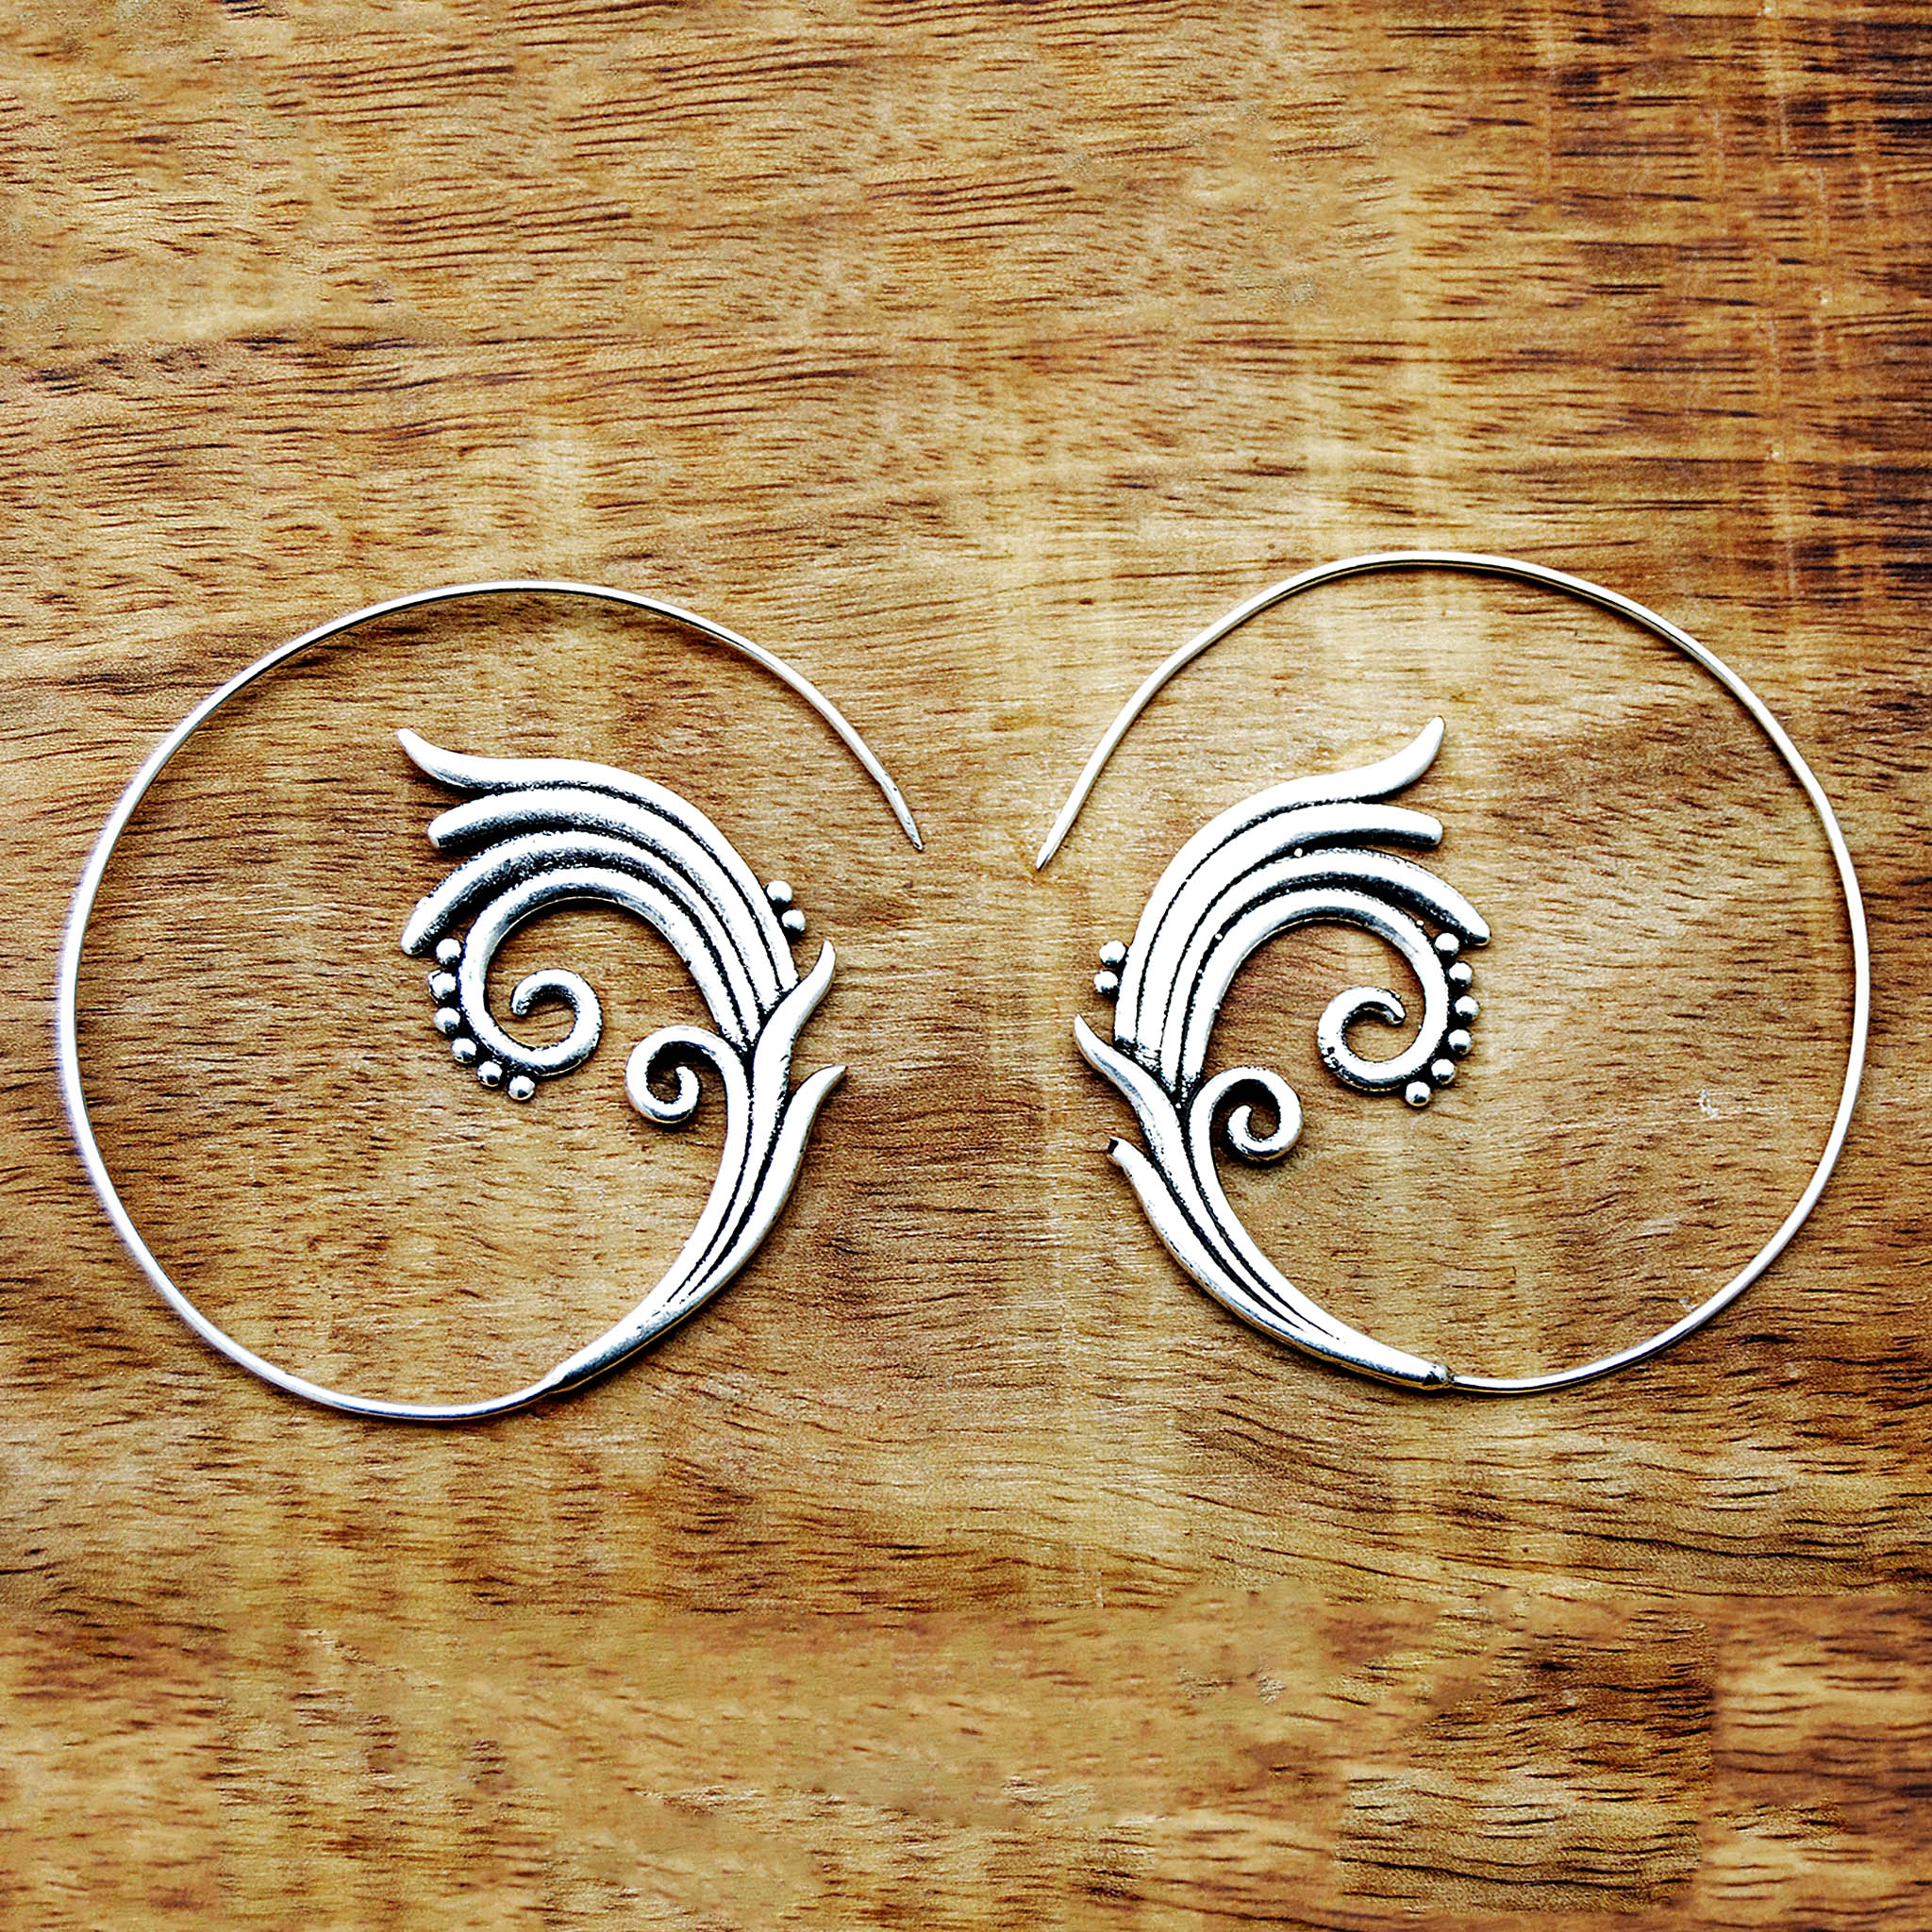 Spiral lotus earrings